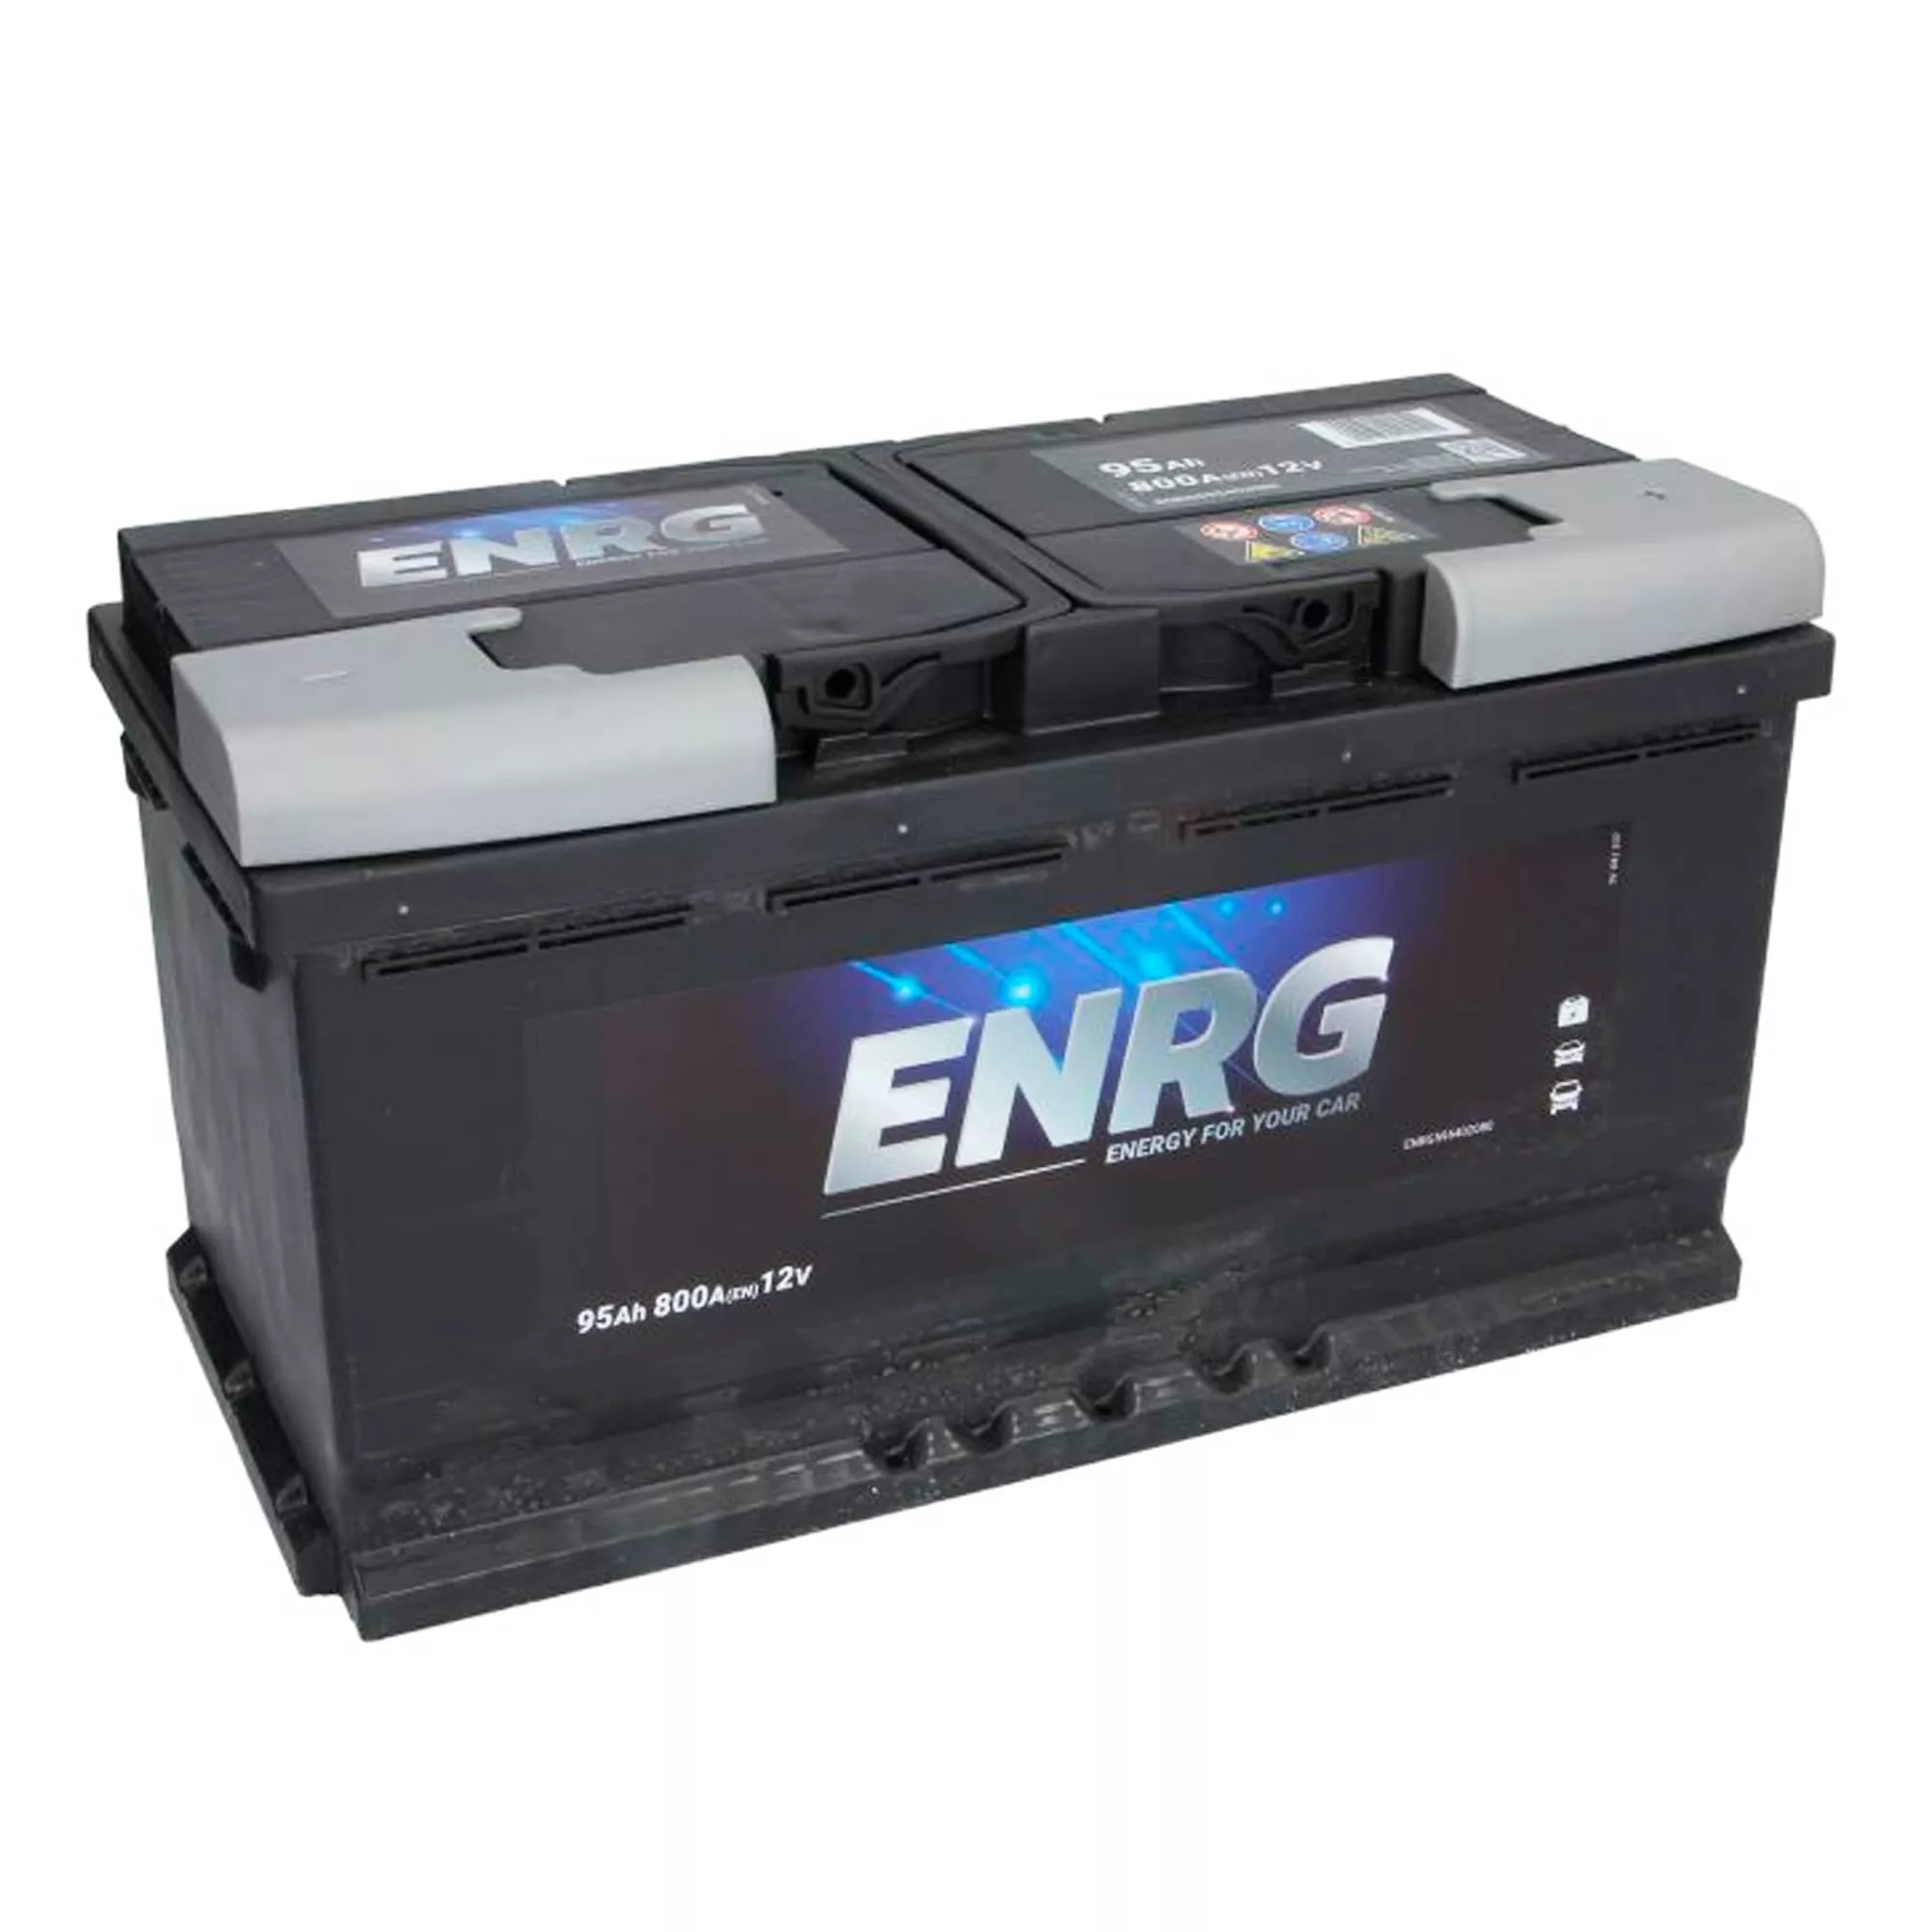 Автомобильный аккумулятор ENRG 12В 95AH АзЕ 800А BUDGET (ENRG595402080)